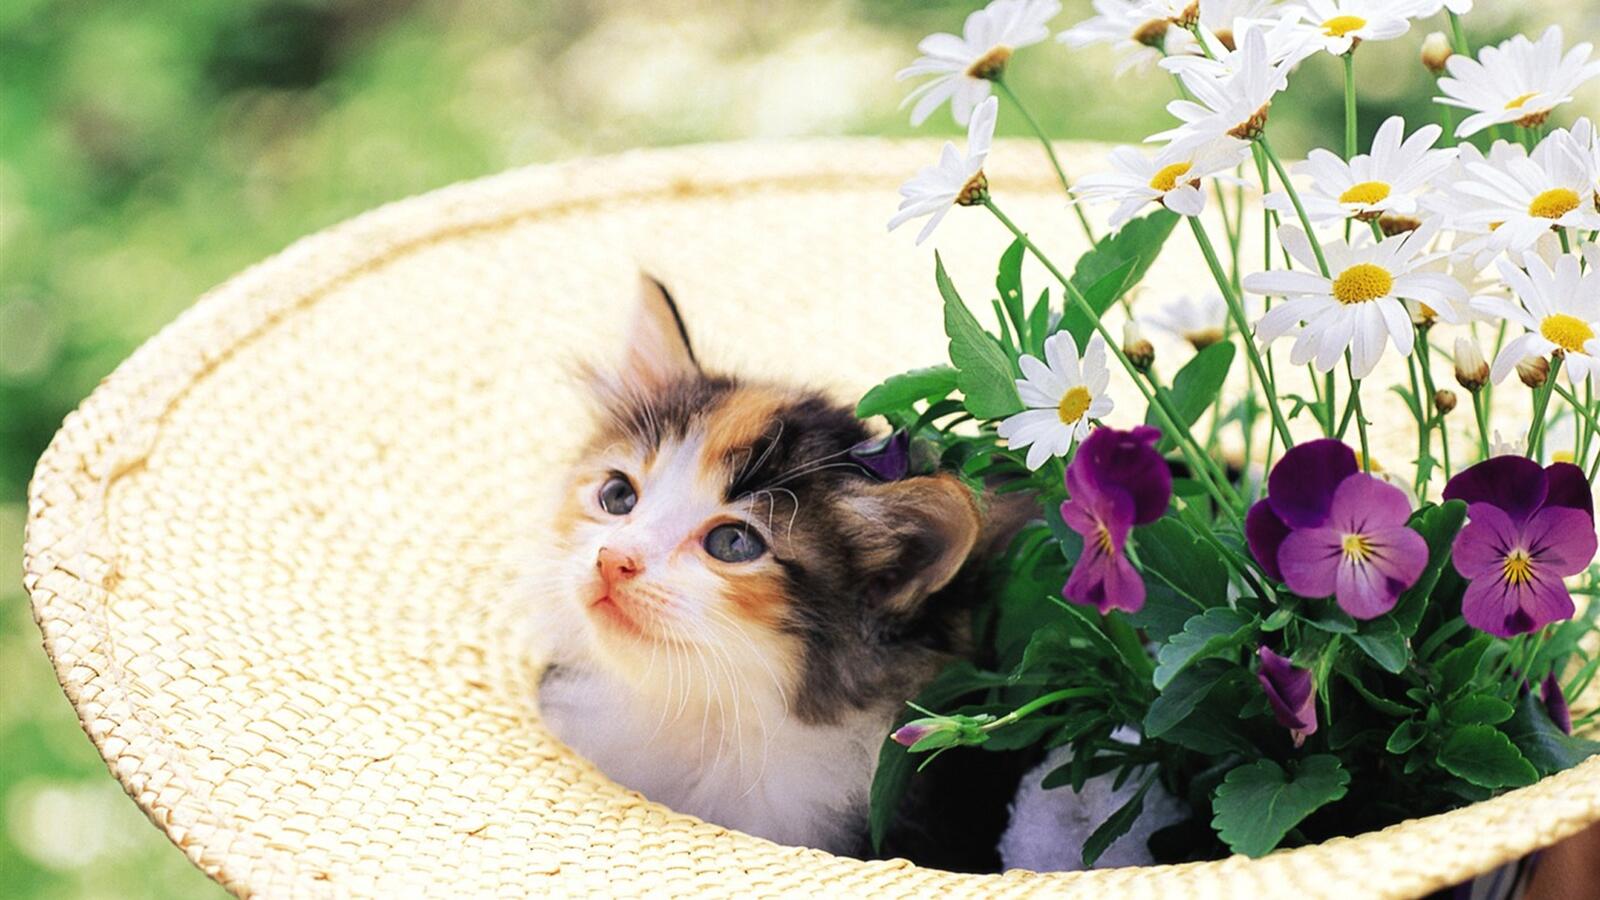 Бесплатное фото Маленький котенок сидит в белой шляпе